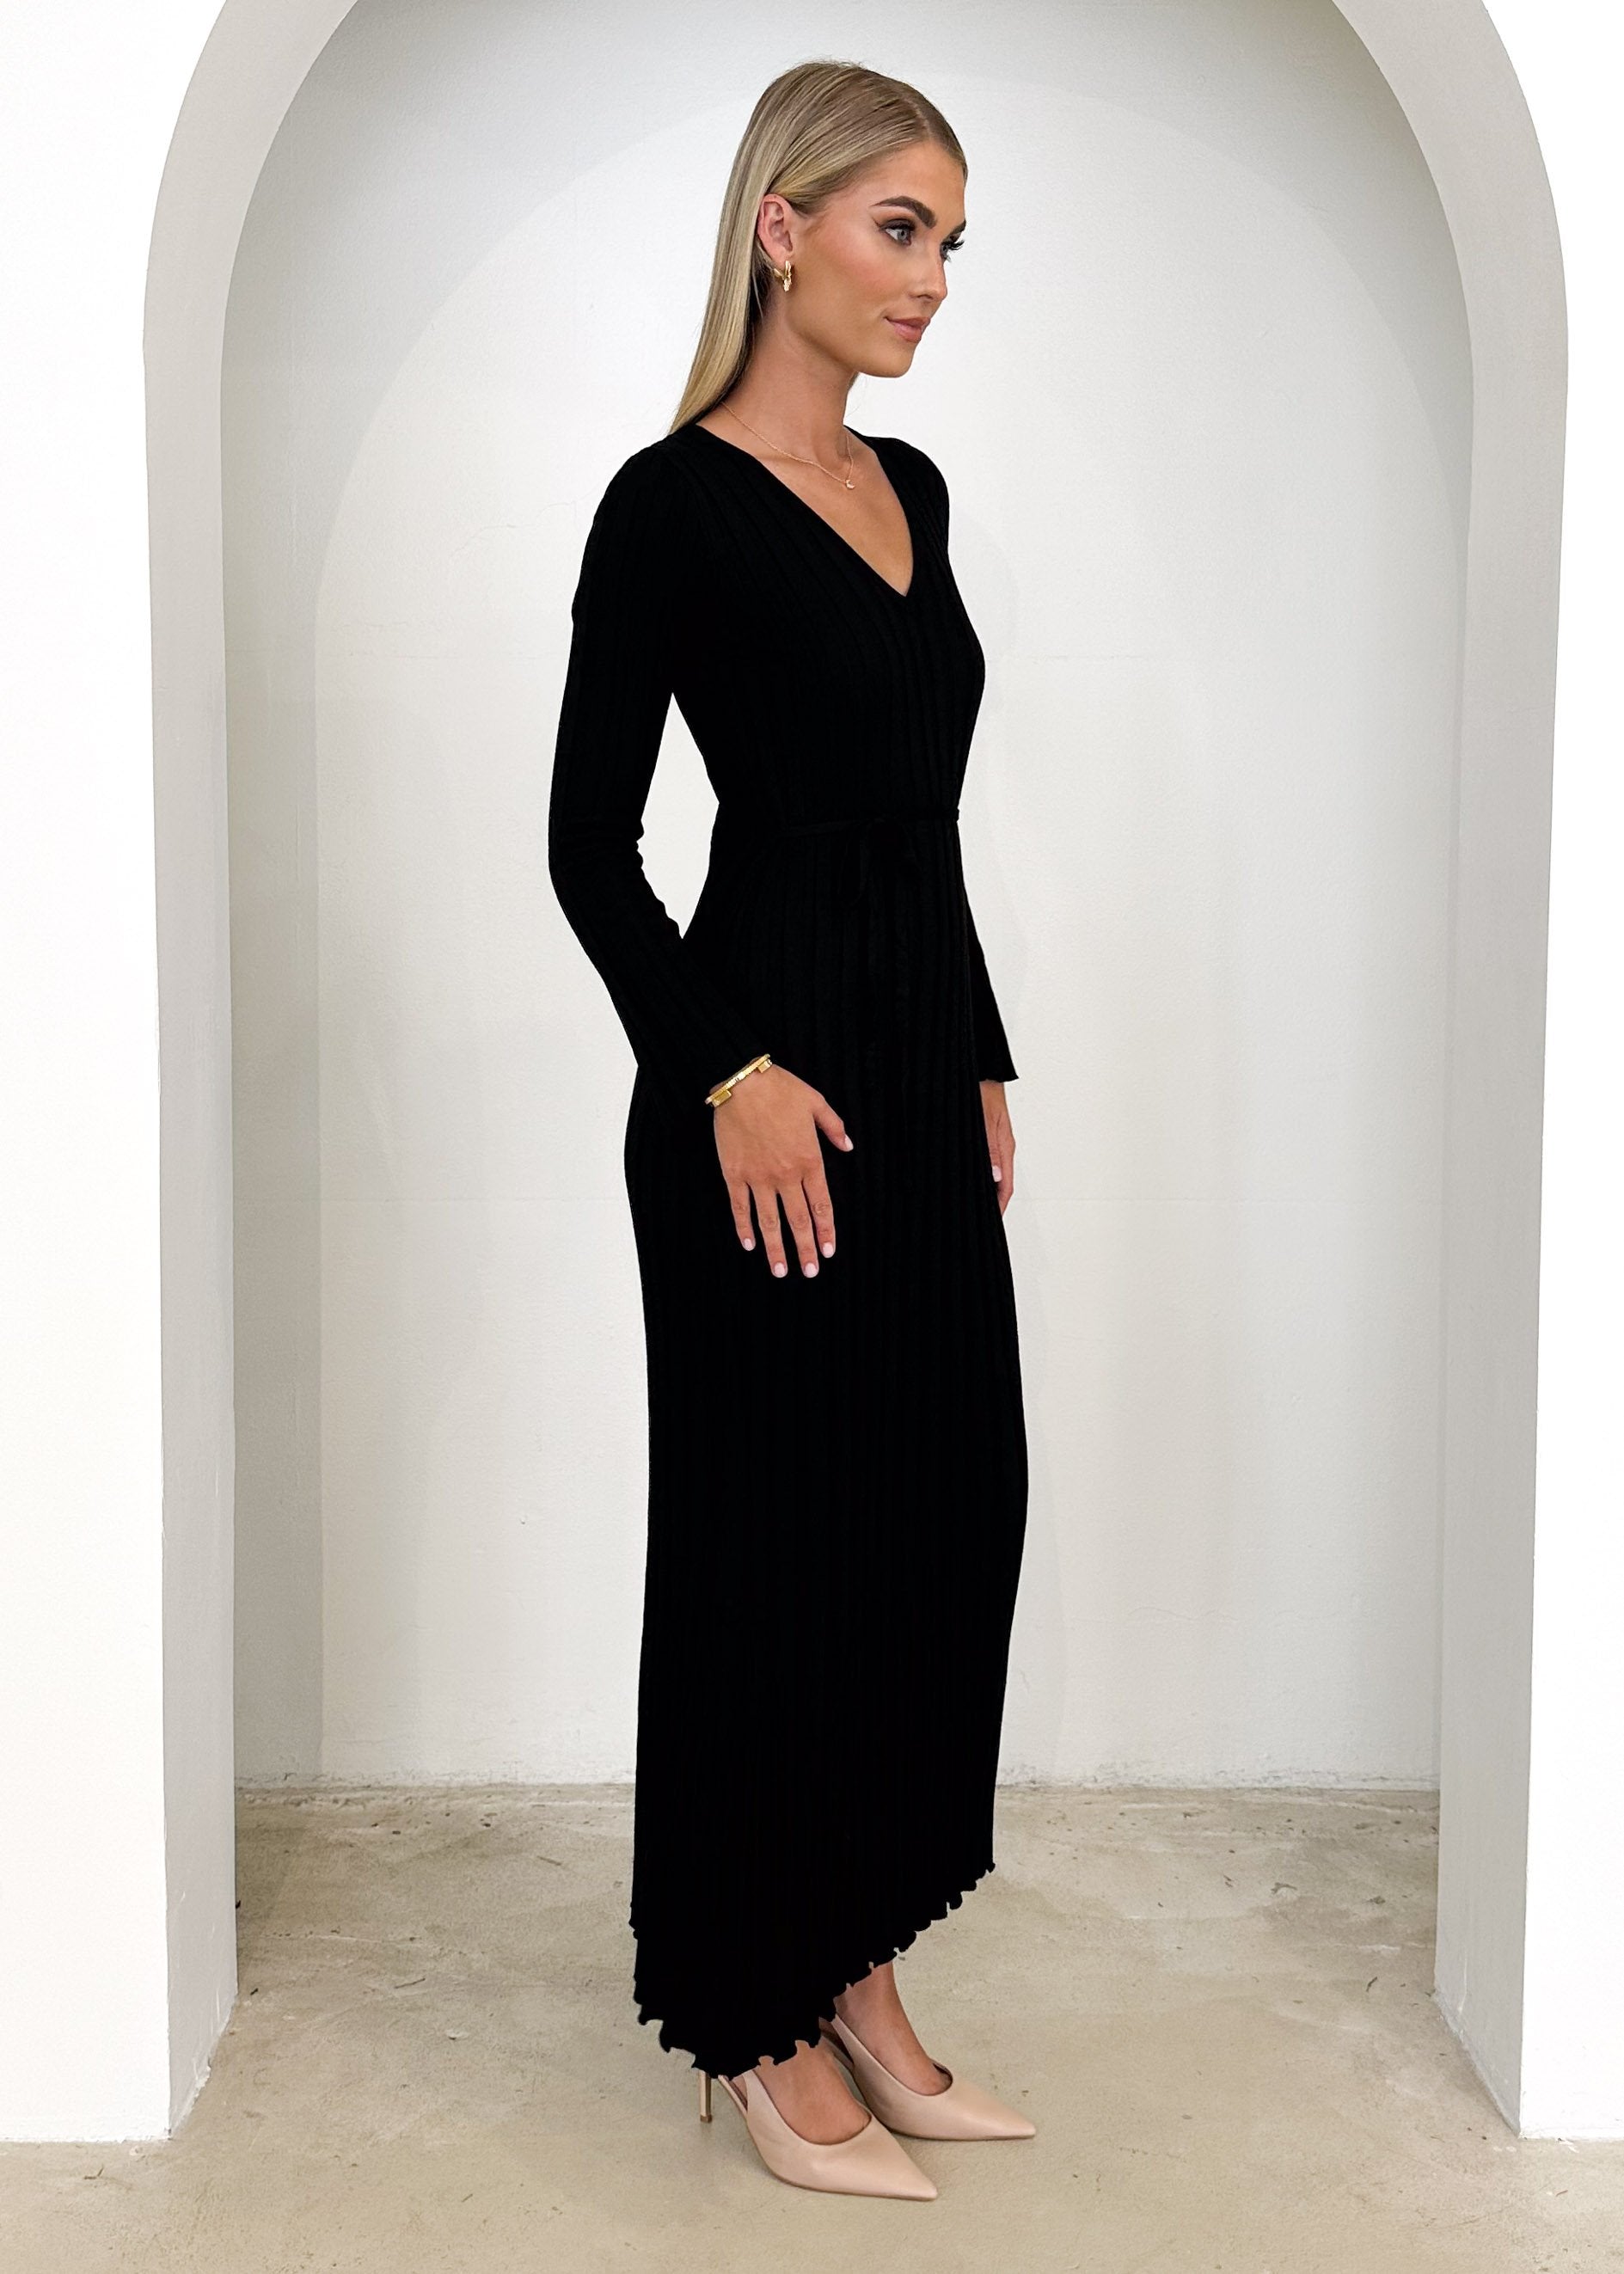 Jelsoe Knit Midi Dress - Black